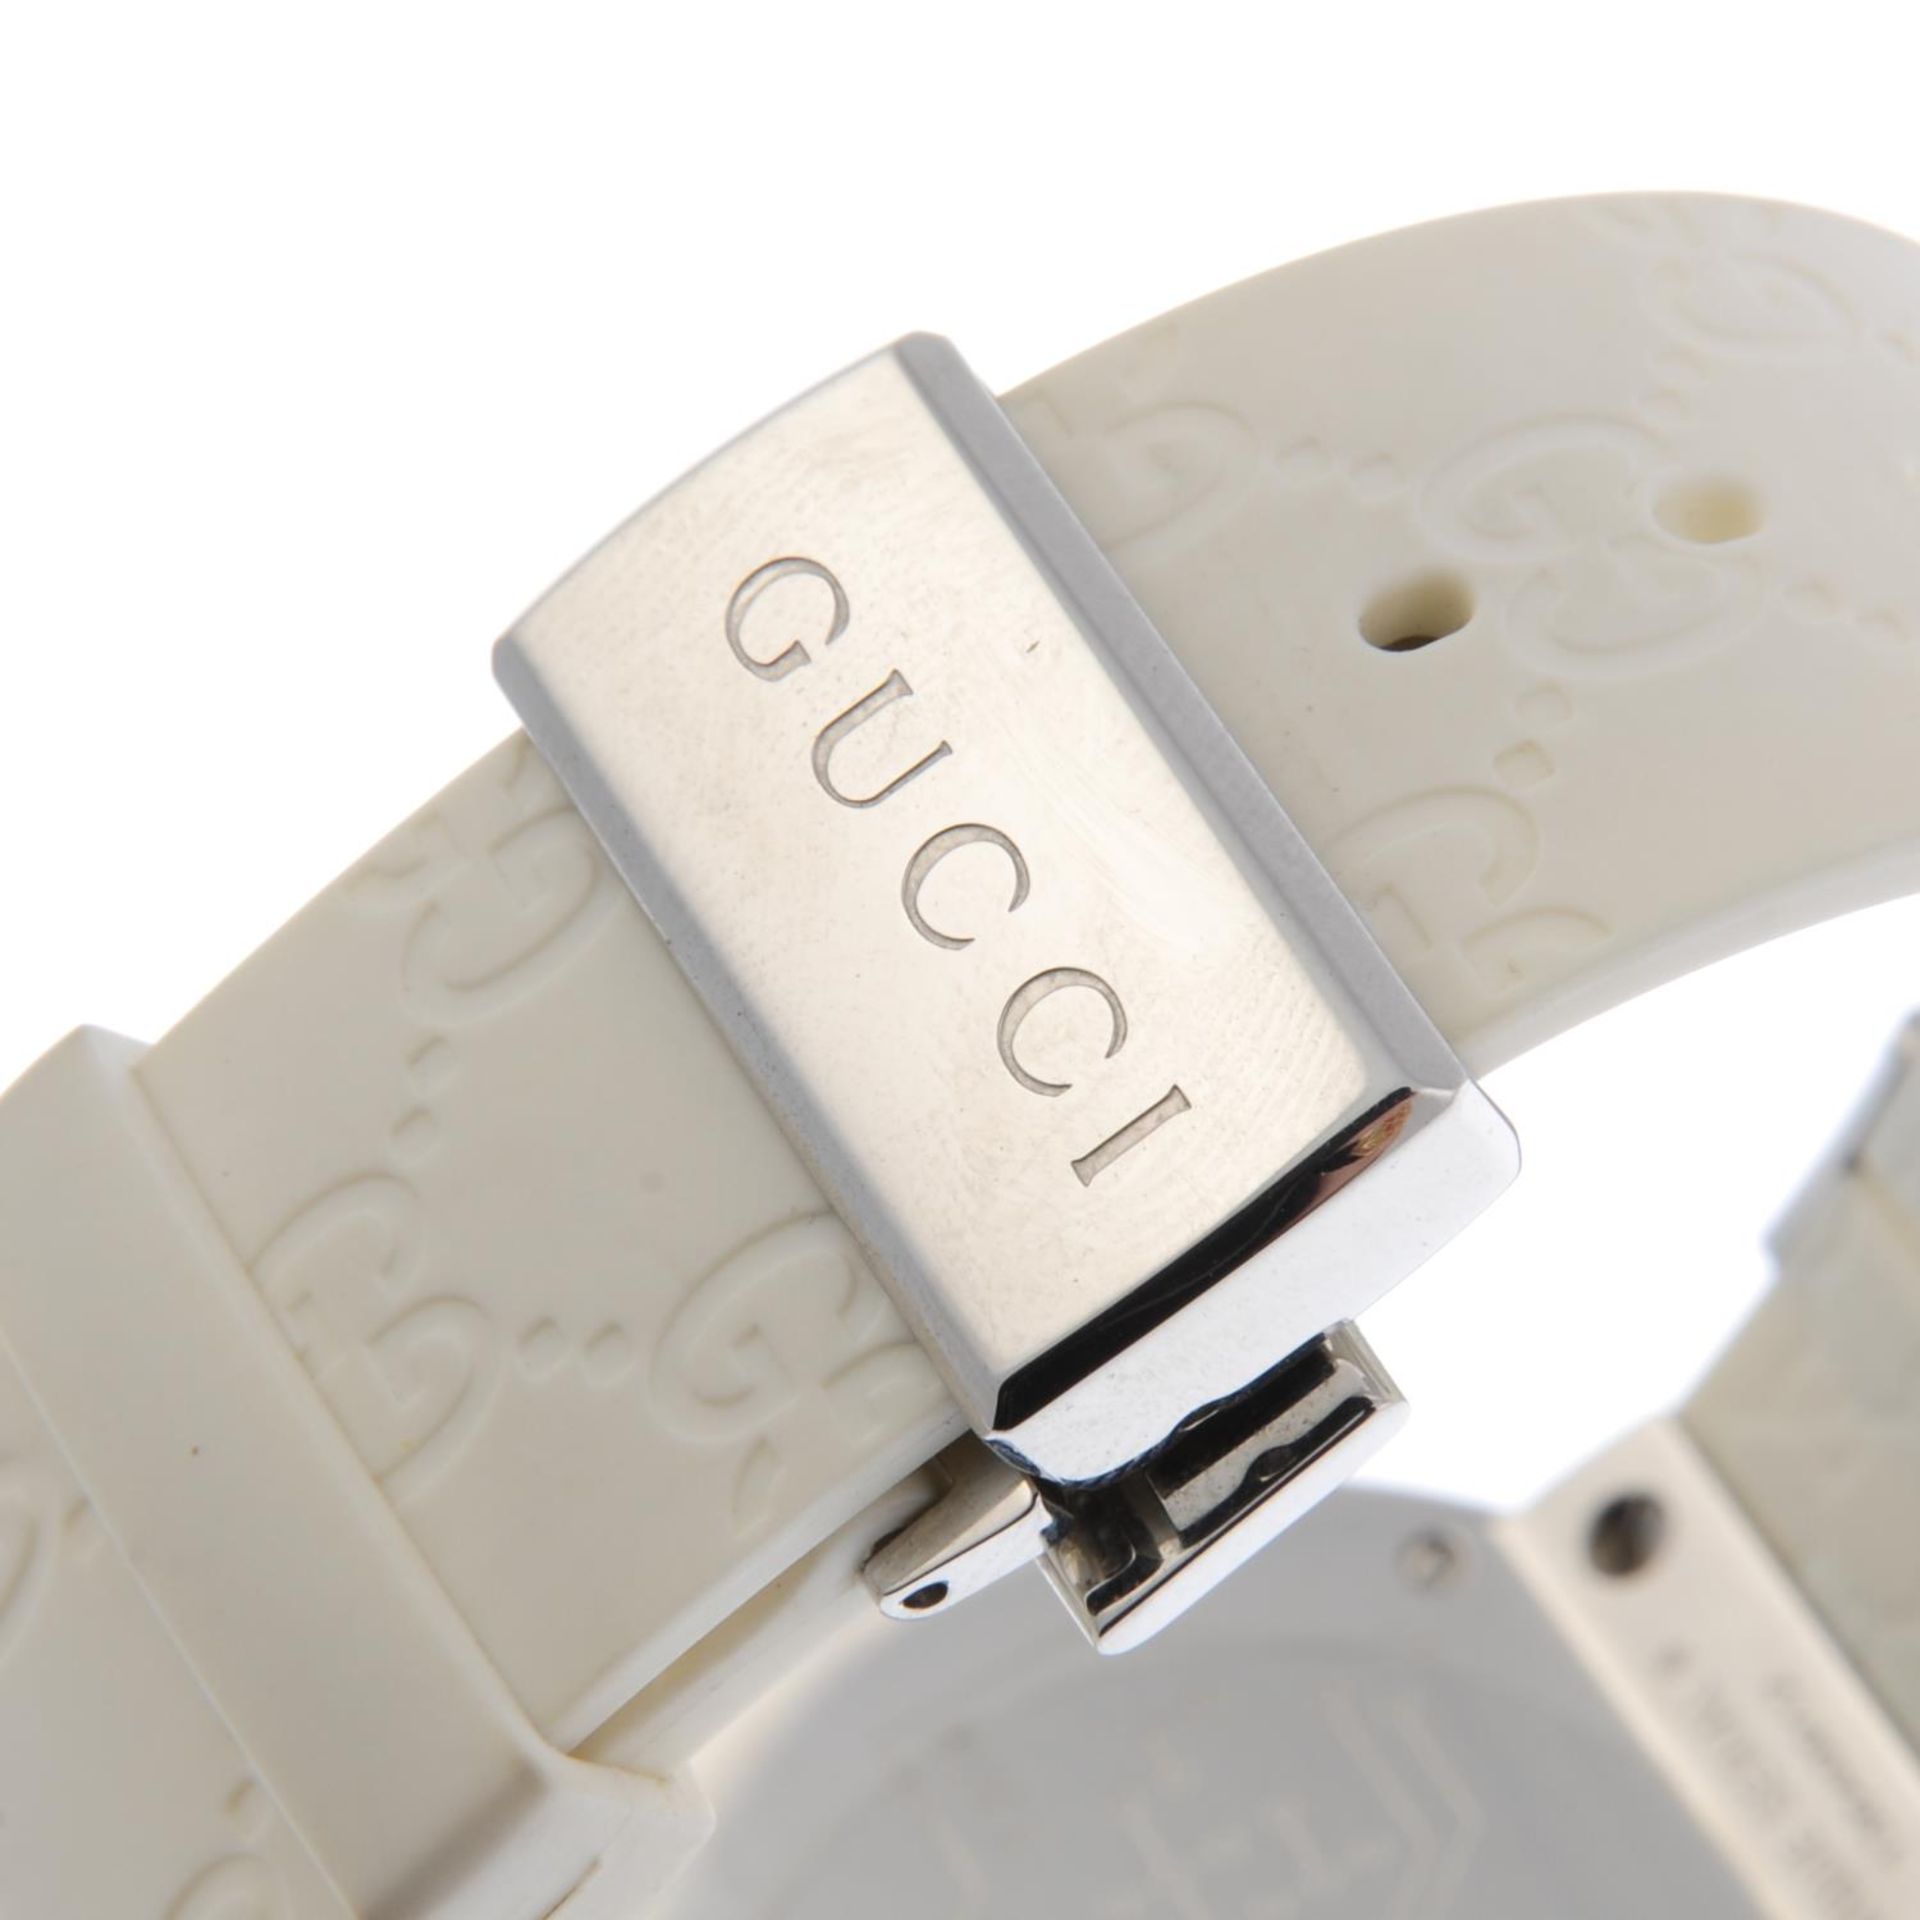 GUCCI - a gentleman's I-Gucci wrist watch. - Bild 2 aus 5